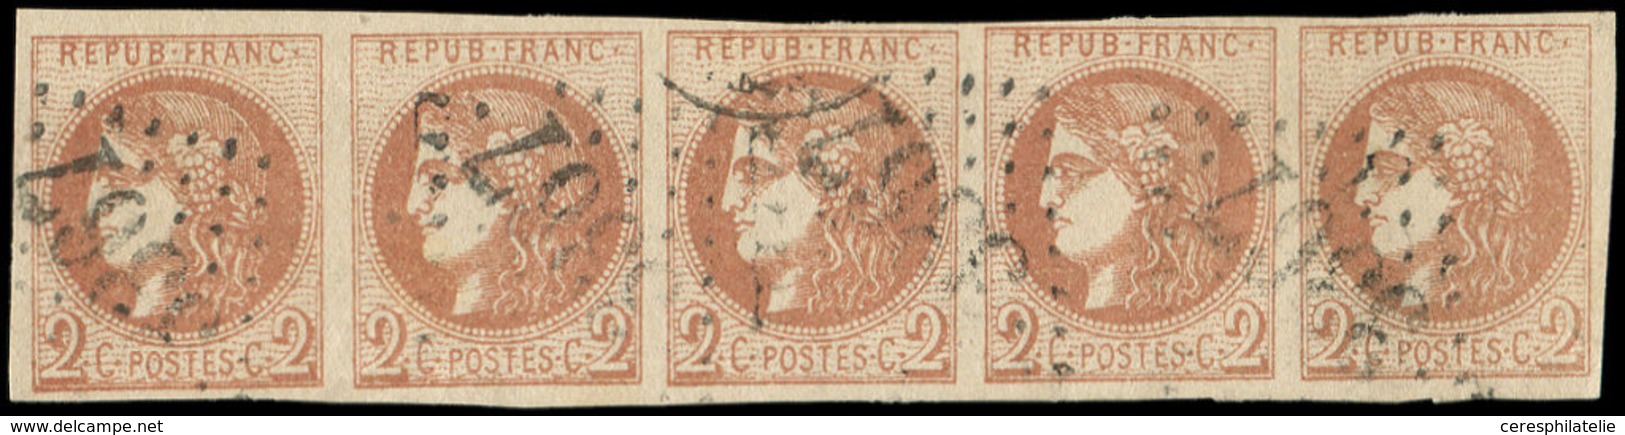 EMISSION DE BORDEAUX - 40B   2c. Brun-rouge, R II, BANDE De 5 Obl. GC 3367, Pos. 11 à 15, TTB - 1870 Ausgabe Bordeaux